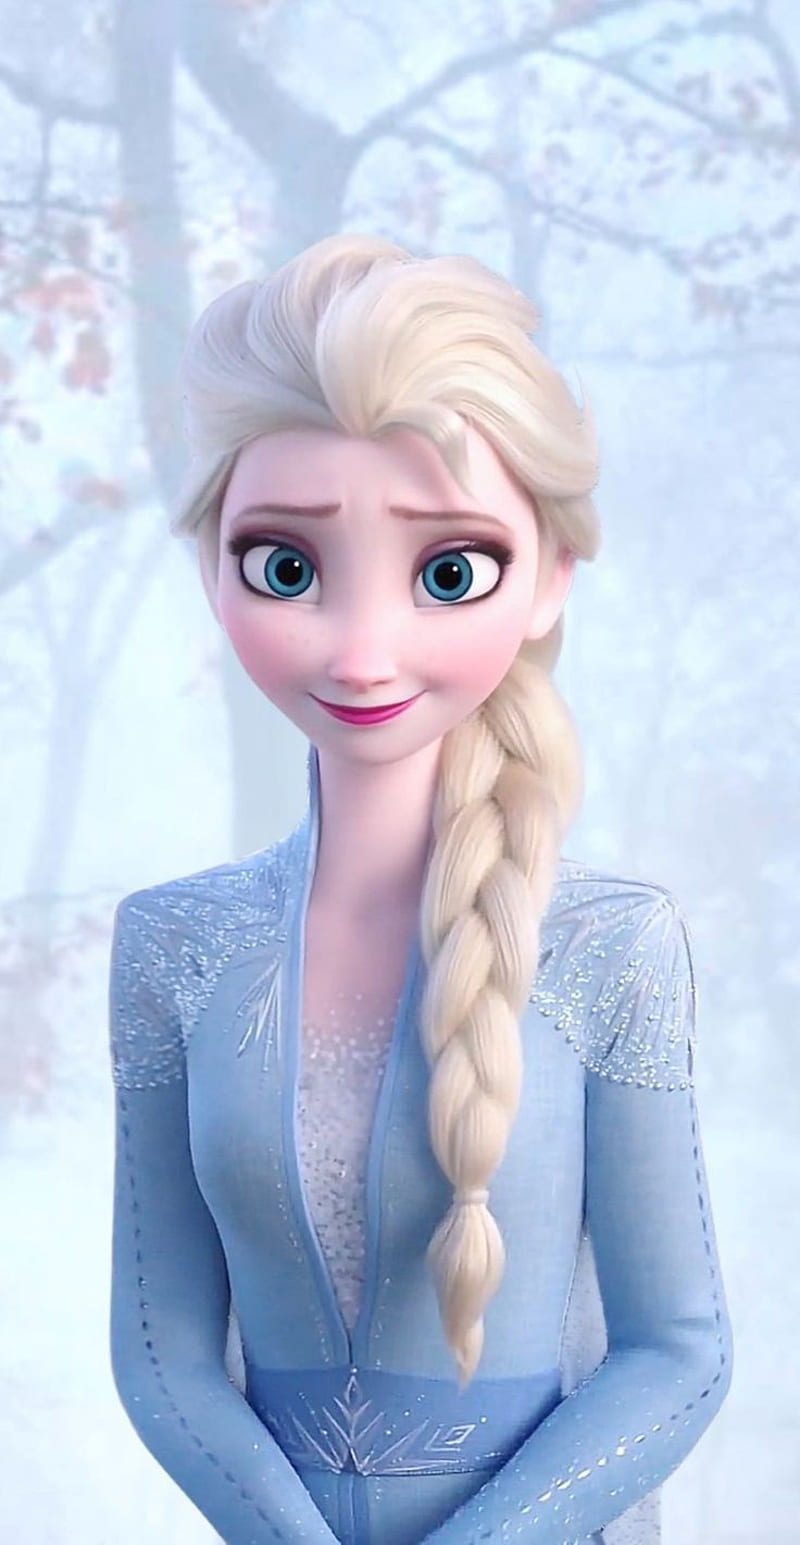 Frozen 2 Elsa white dress hair down mobile. iphone disney princess